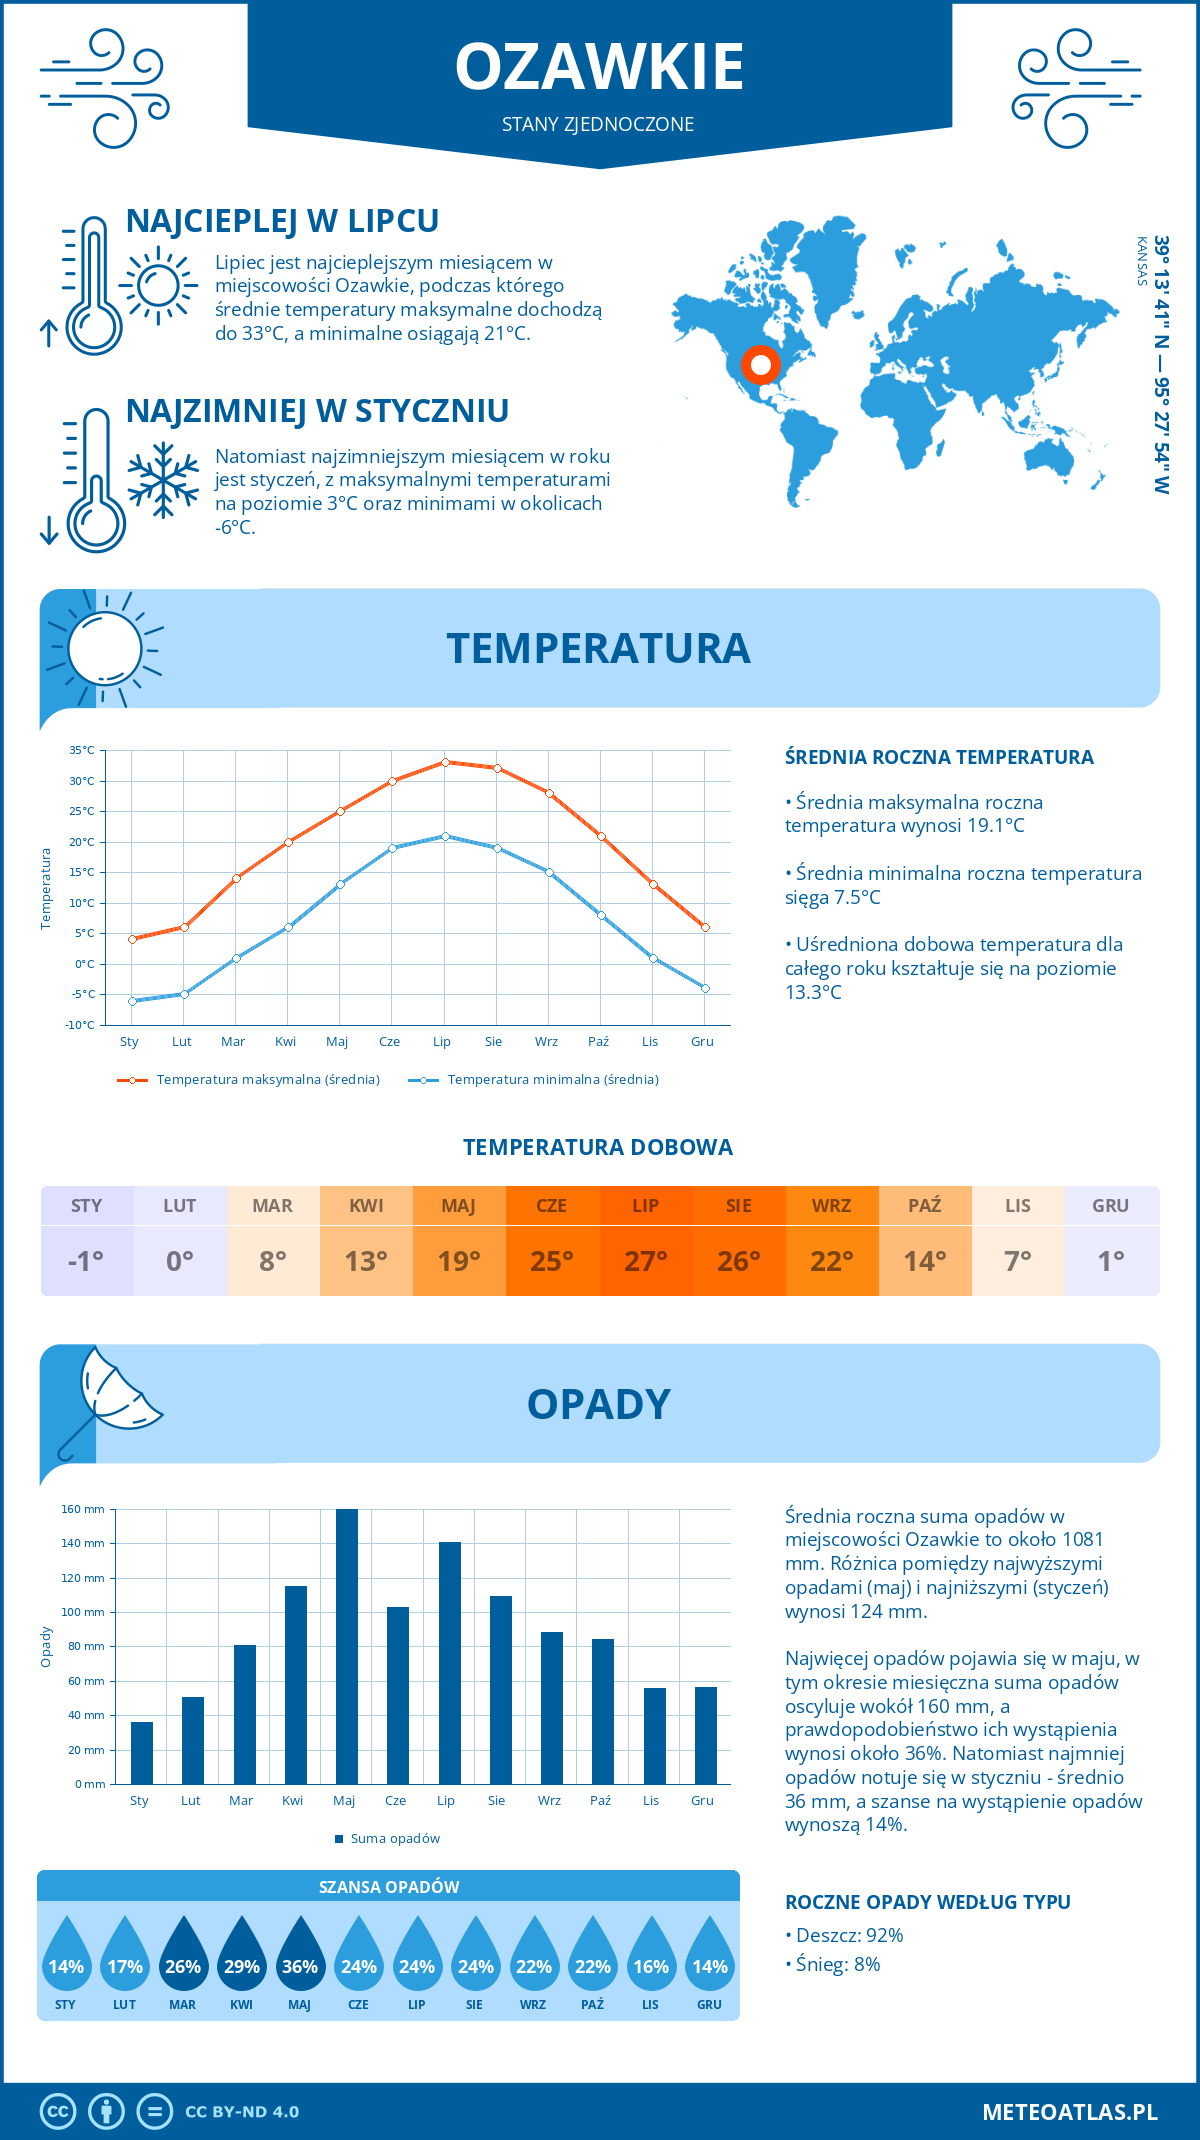 Pogoda Ozawkie (Stany Zjednoczone). Temperatura oraz opady.